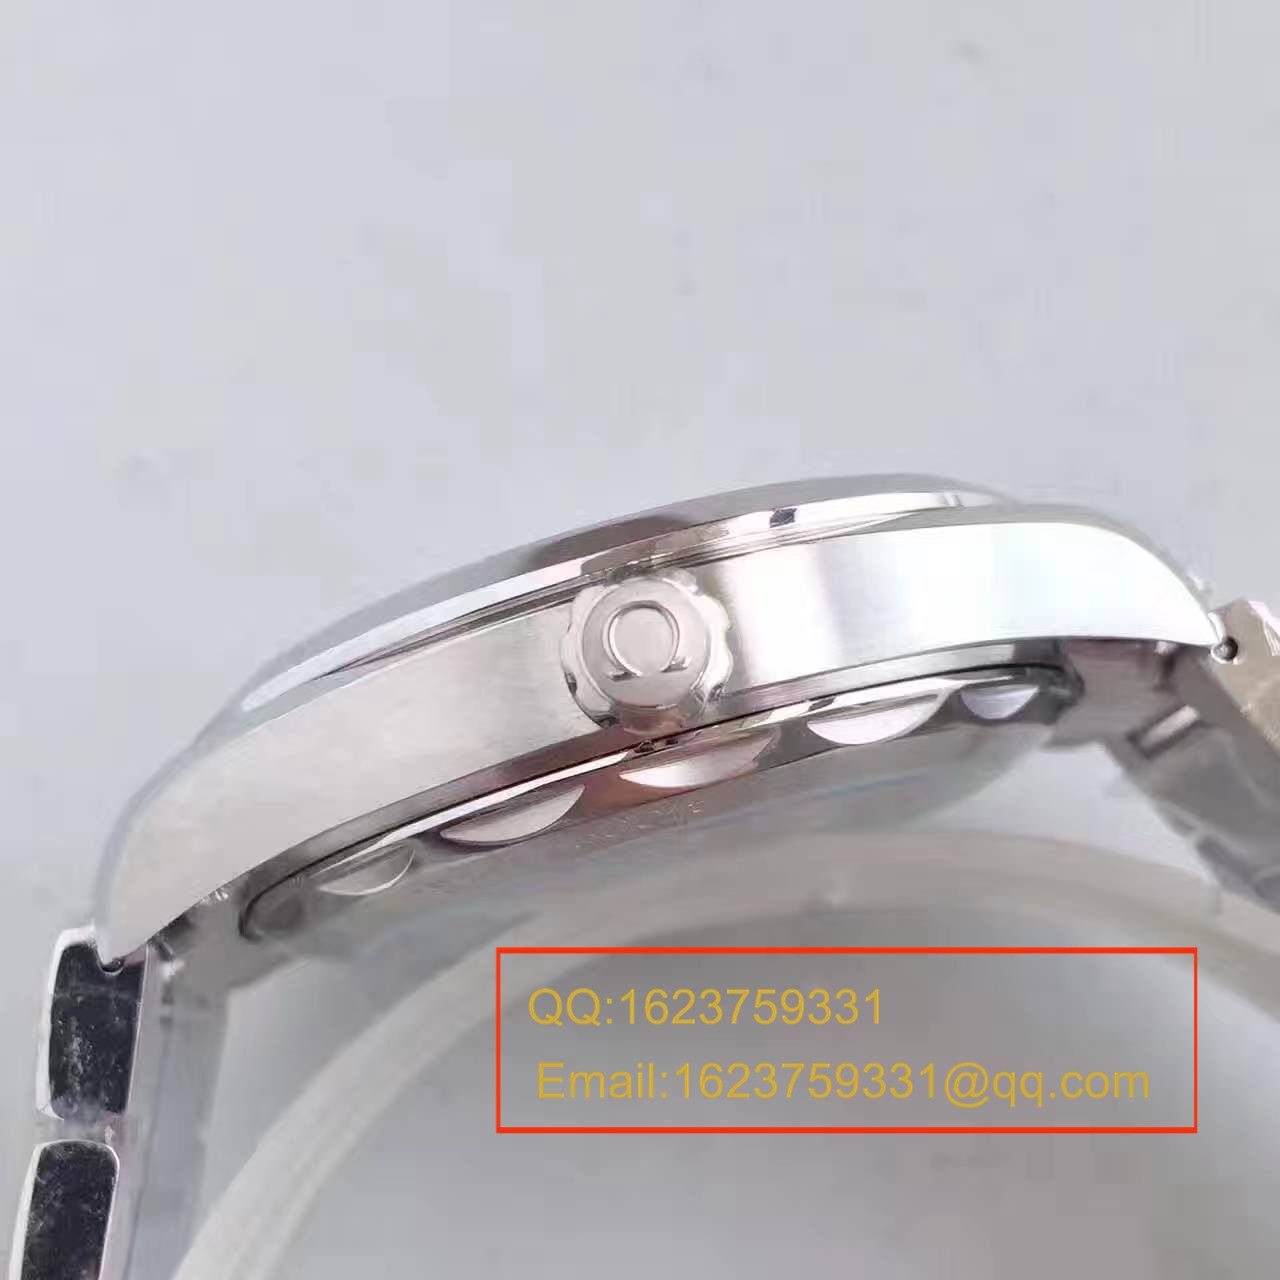 【XF厂一比一超A精仿手表】欧米茄海马系列220.10.38.20.03.001腕表 